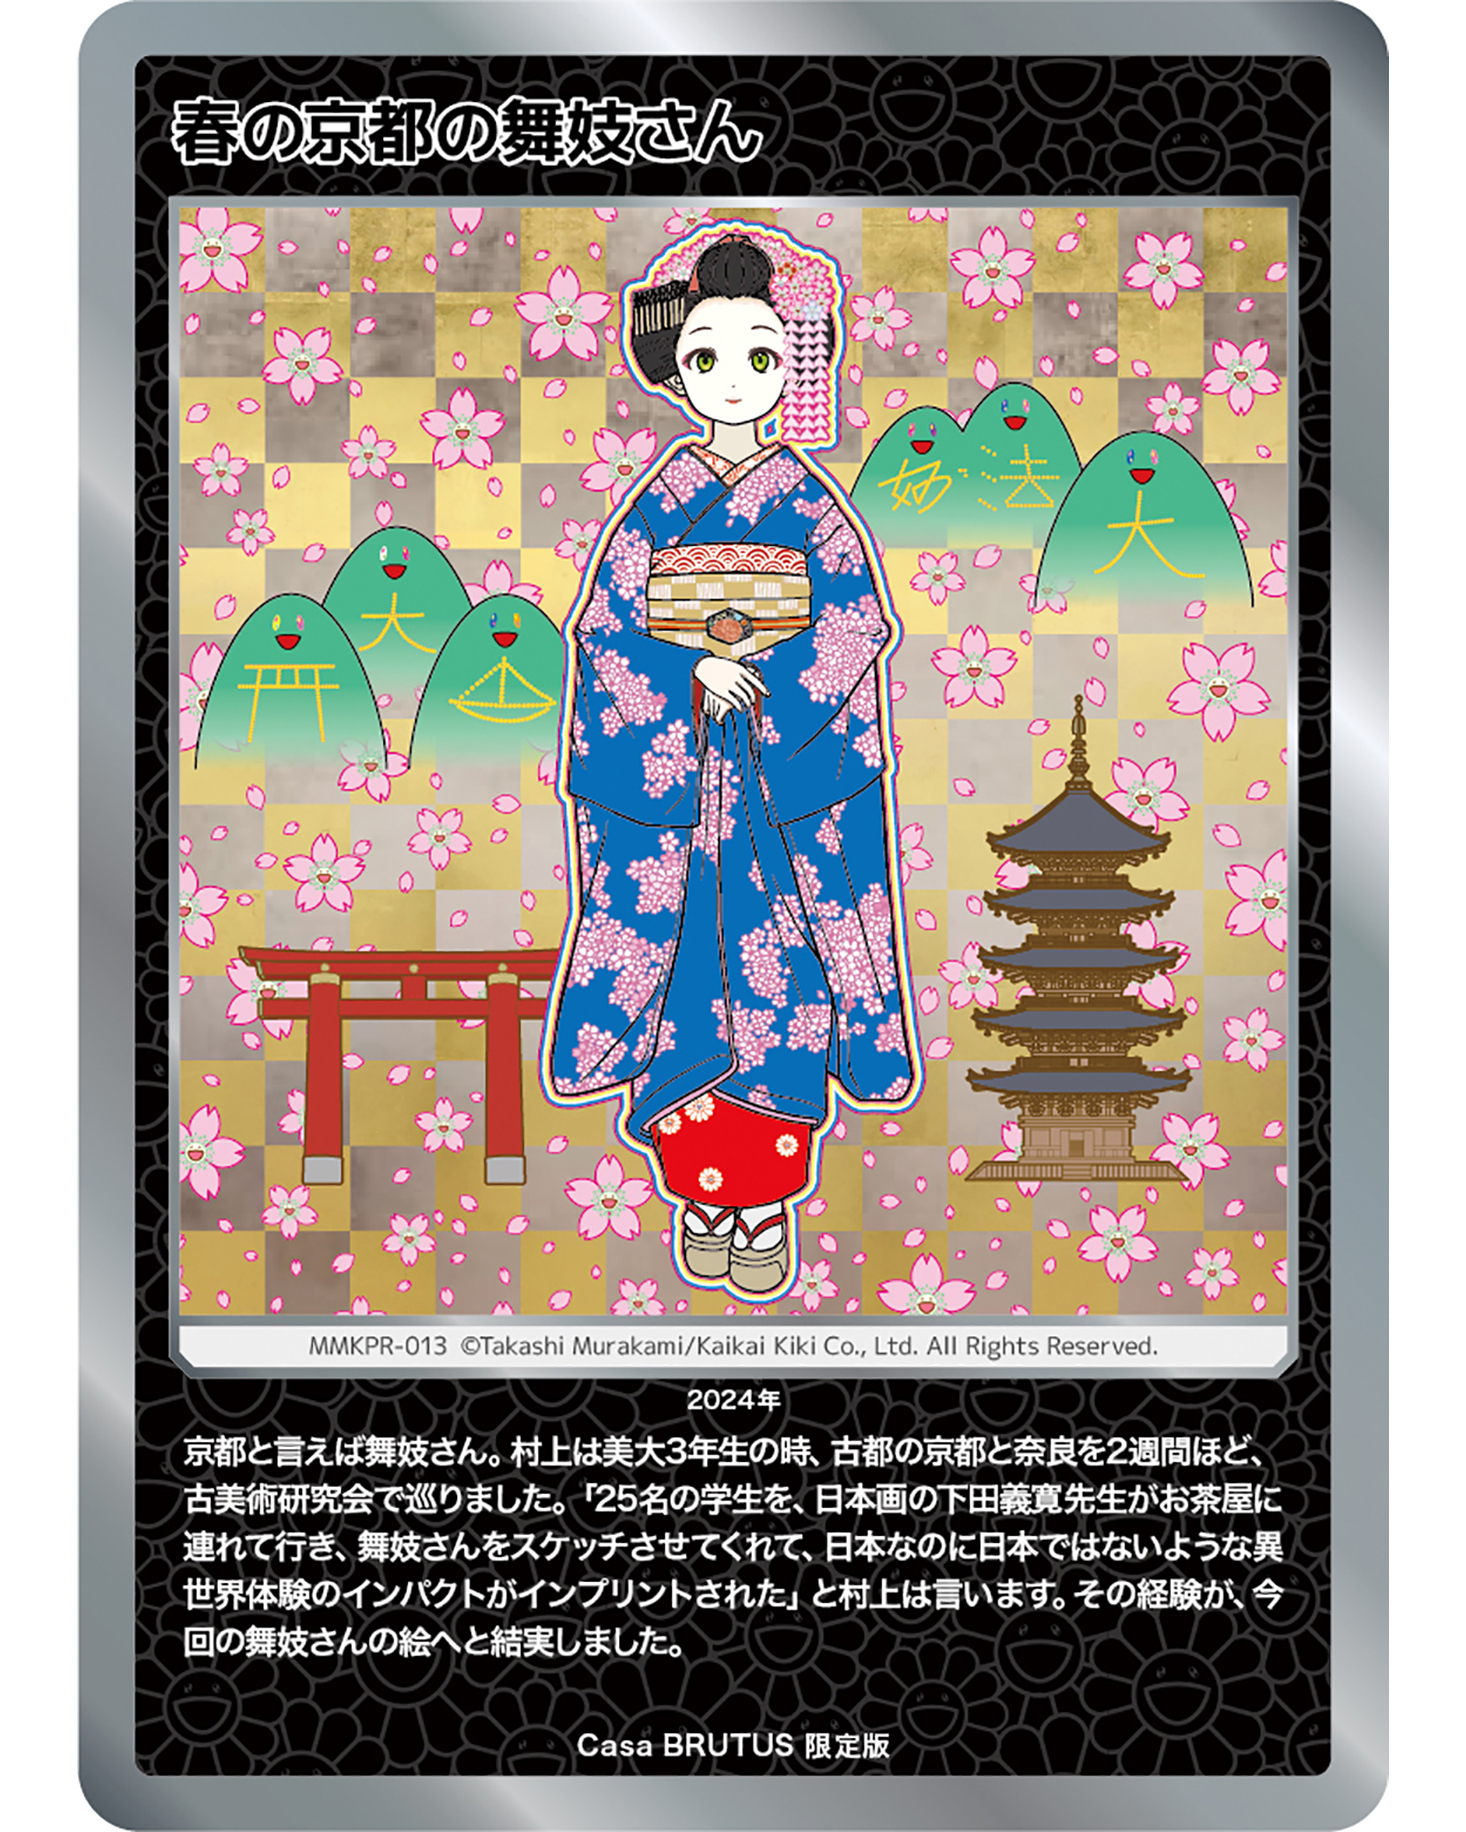 村上隆もののけ京都」トレカ、Casa BRUTUS 限定版「春の京都の舞妓さん 